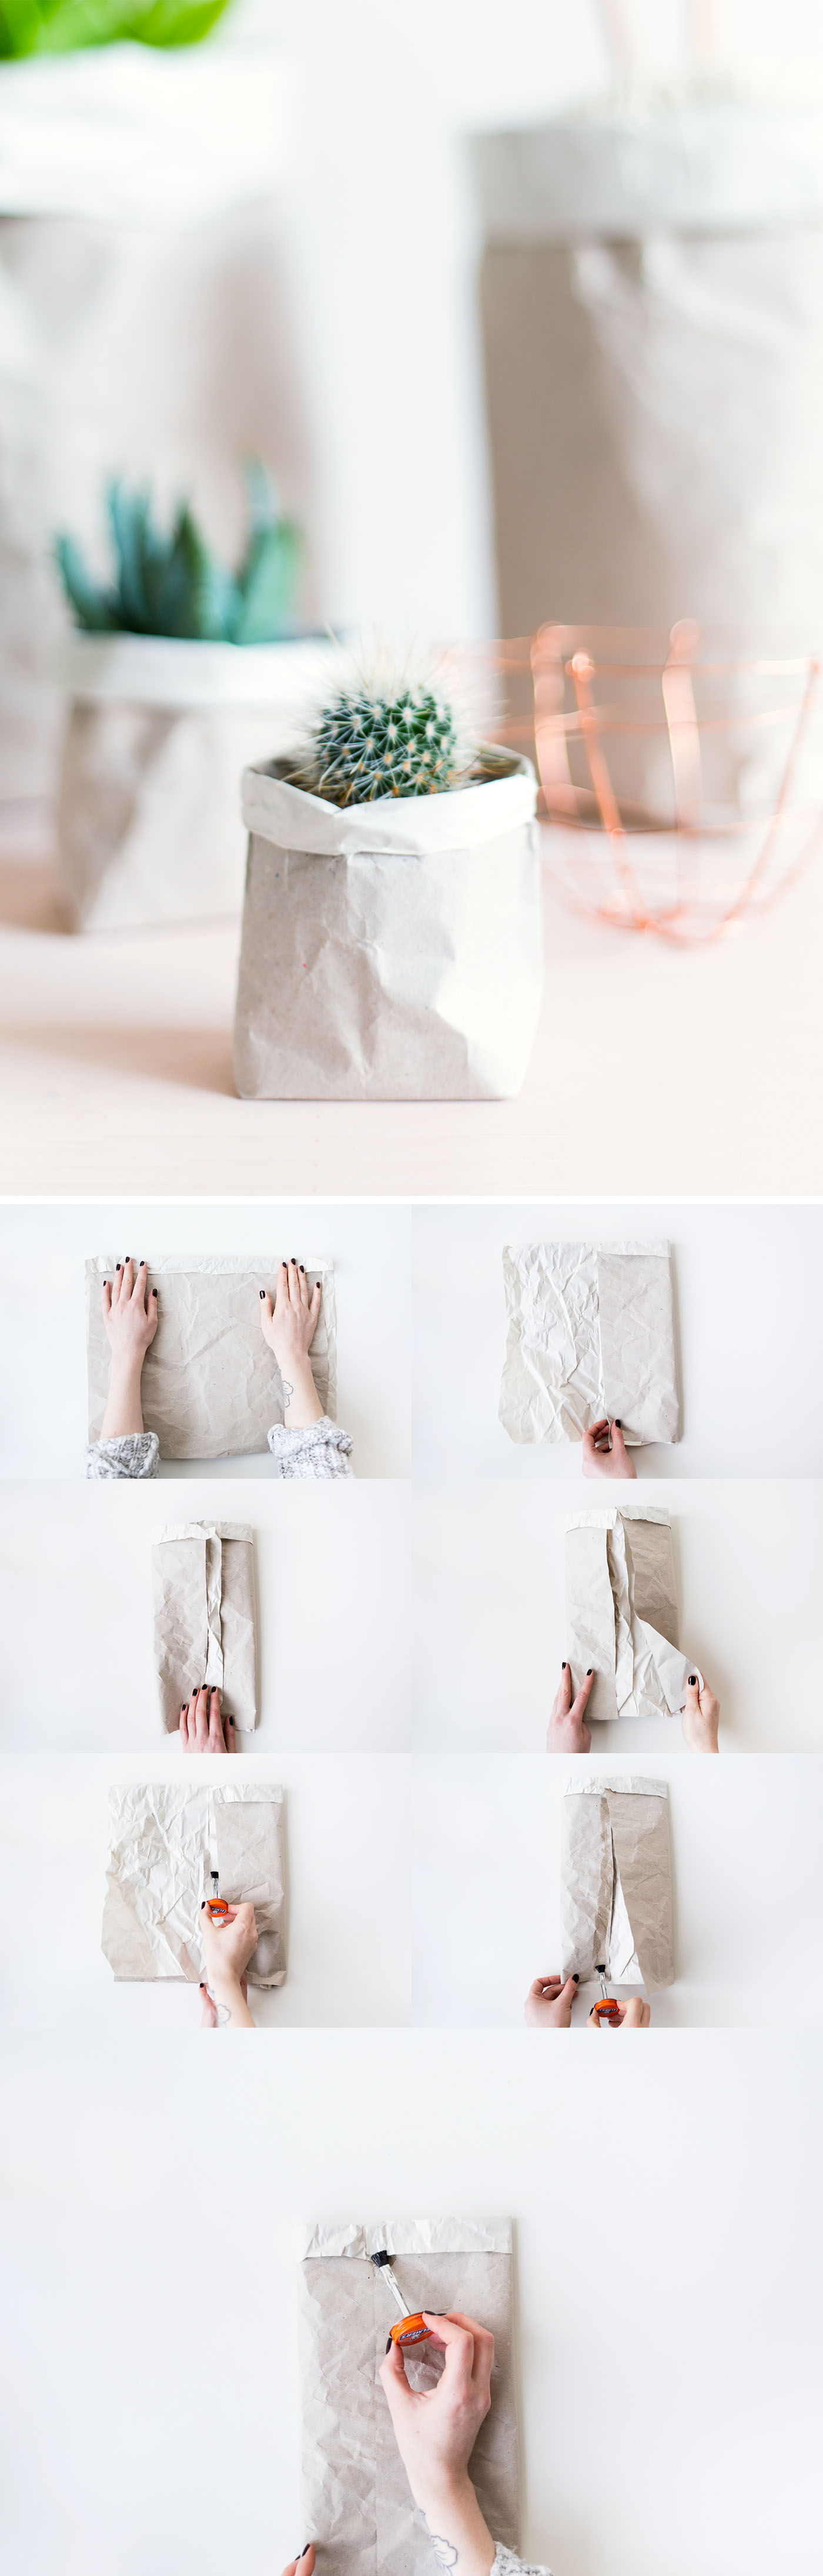 DIY Packing Paper Sack Planters | @fallfordiy